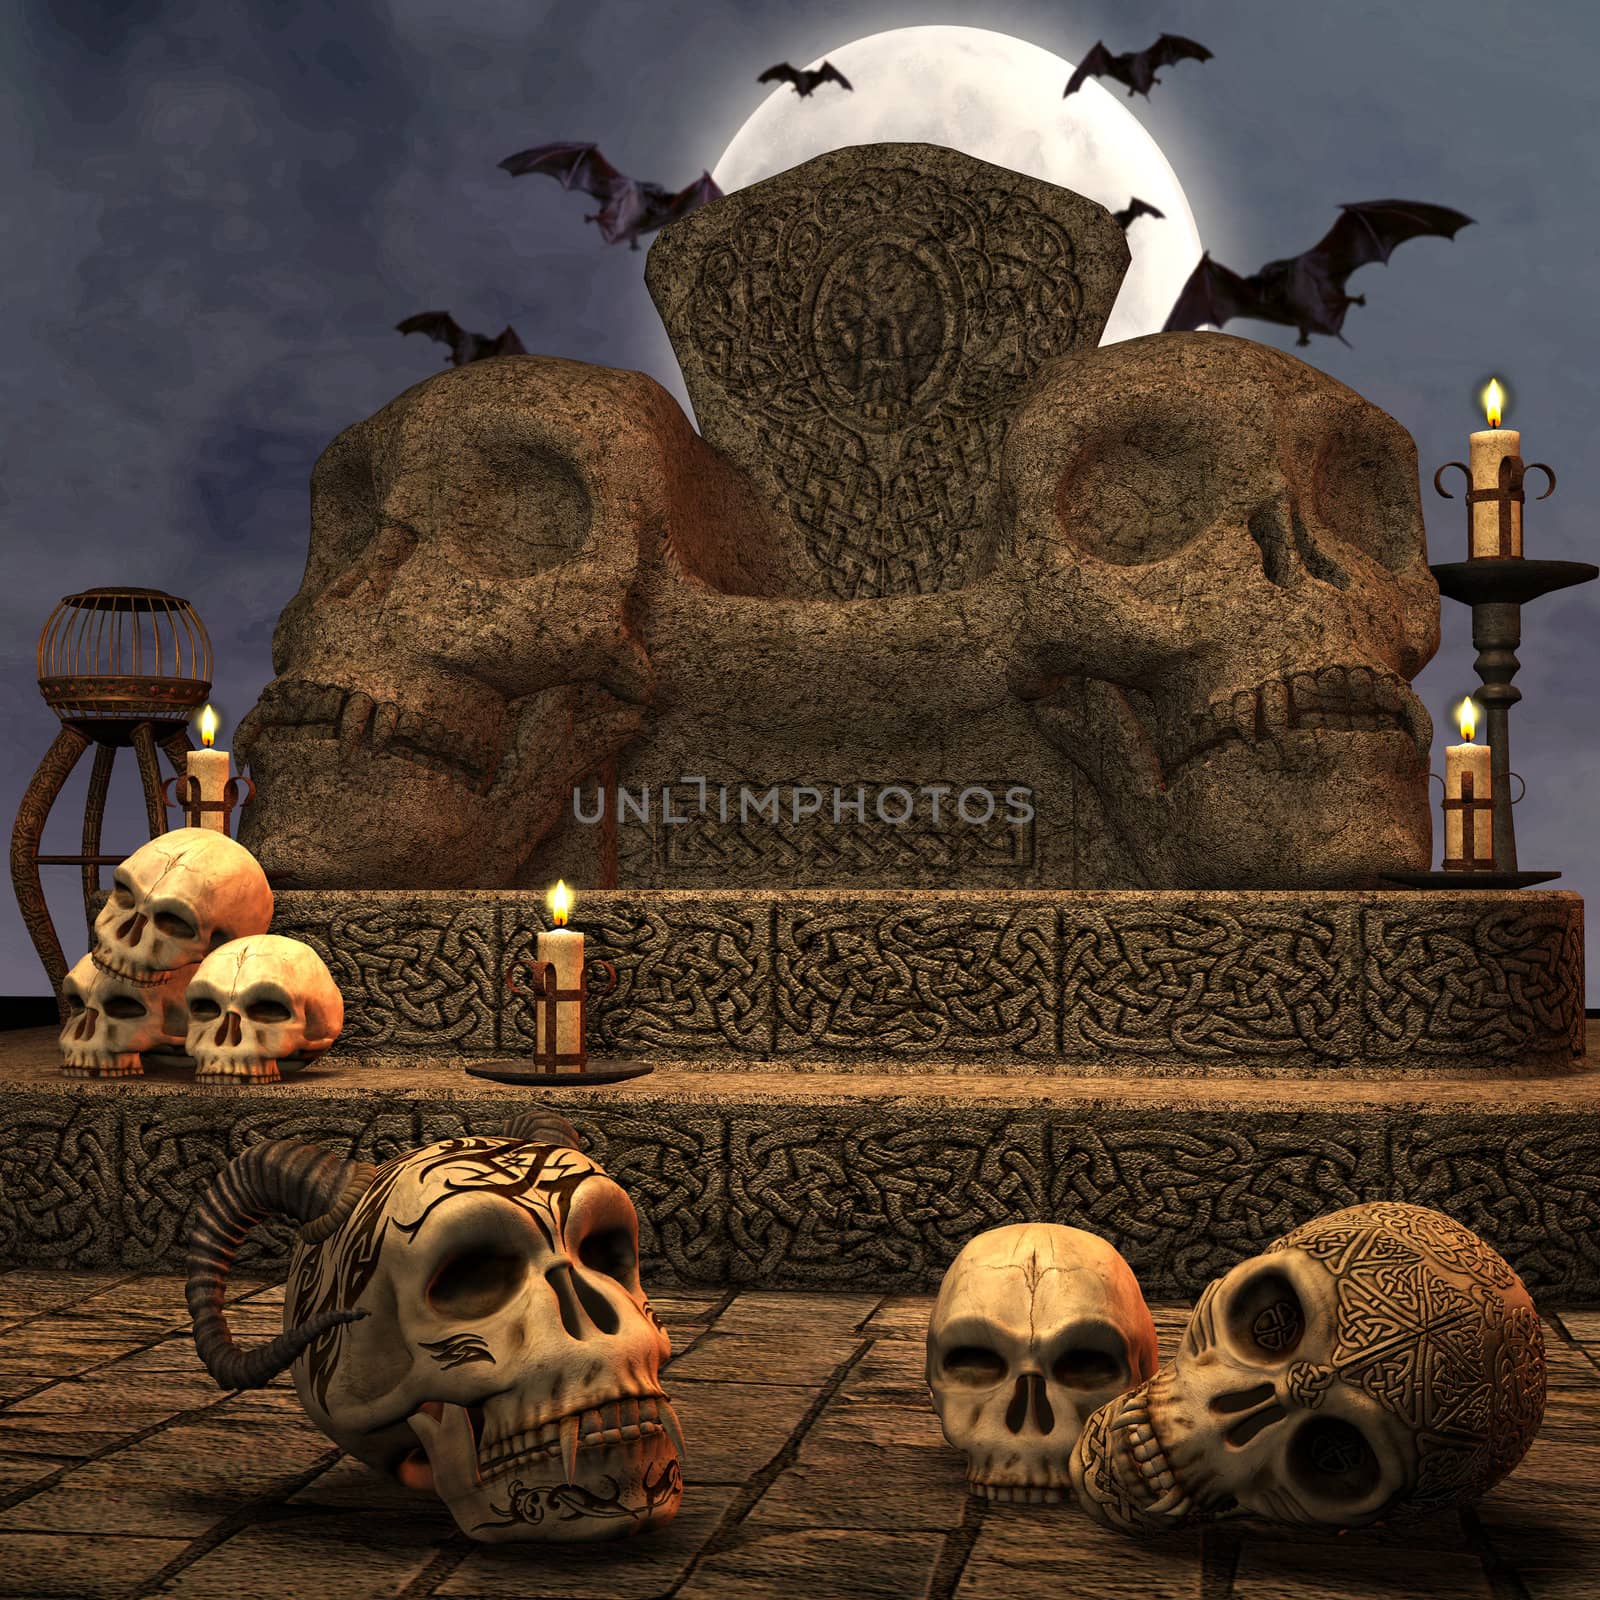 3d render of a spooky scene